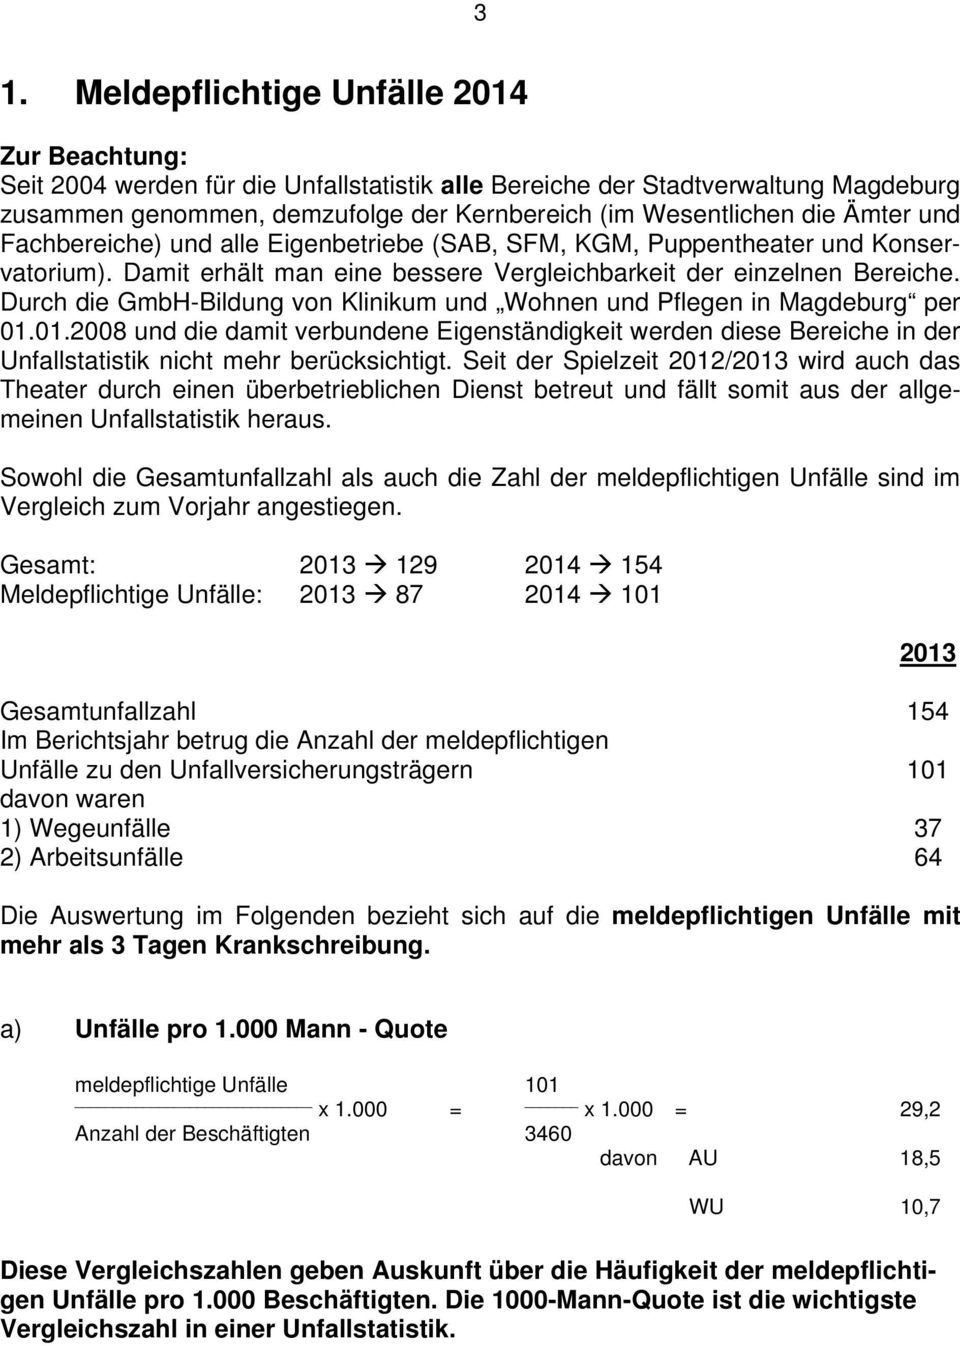 Durch die GmbH-Bildung von Klinikum und Wohnen und Pflegen in Magdeburg per 01.01.2008 und die damit verbundene Eigenständigkeit werden diese Bereiche in der Unfallstatistik nicht mehr berücksichtigt.